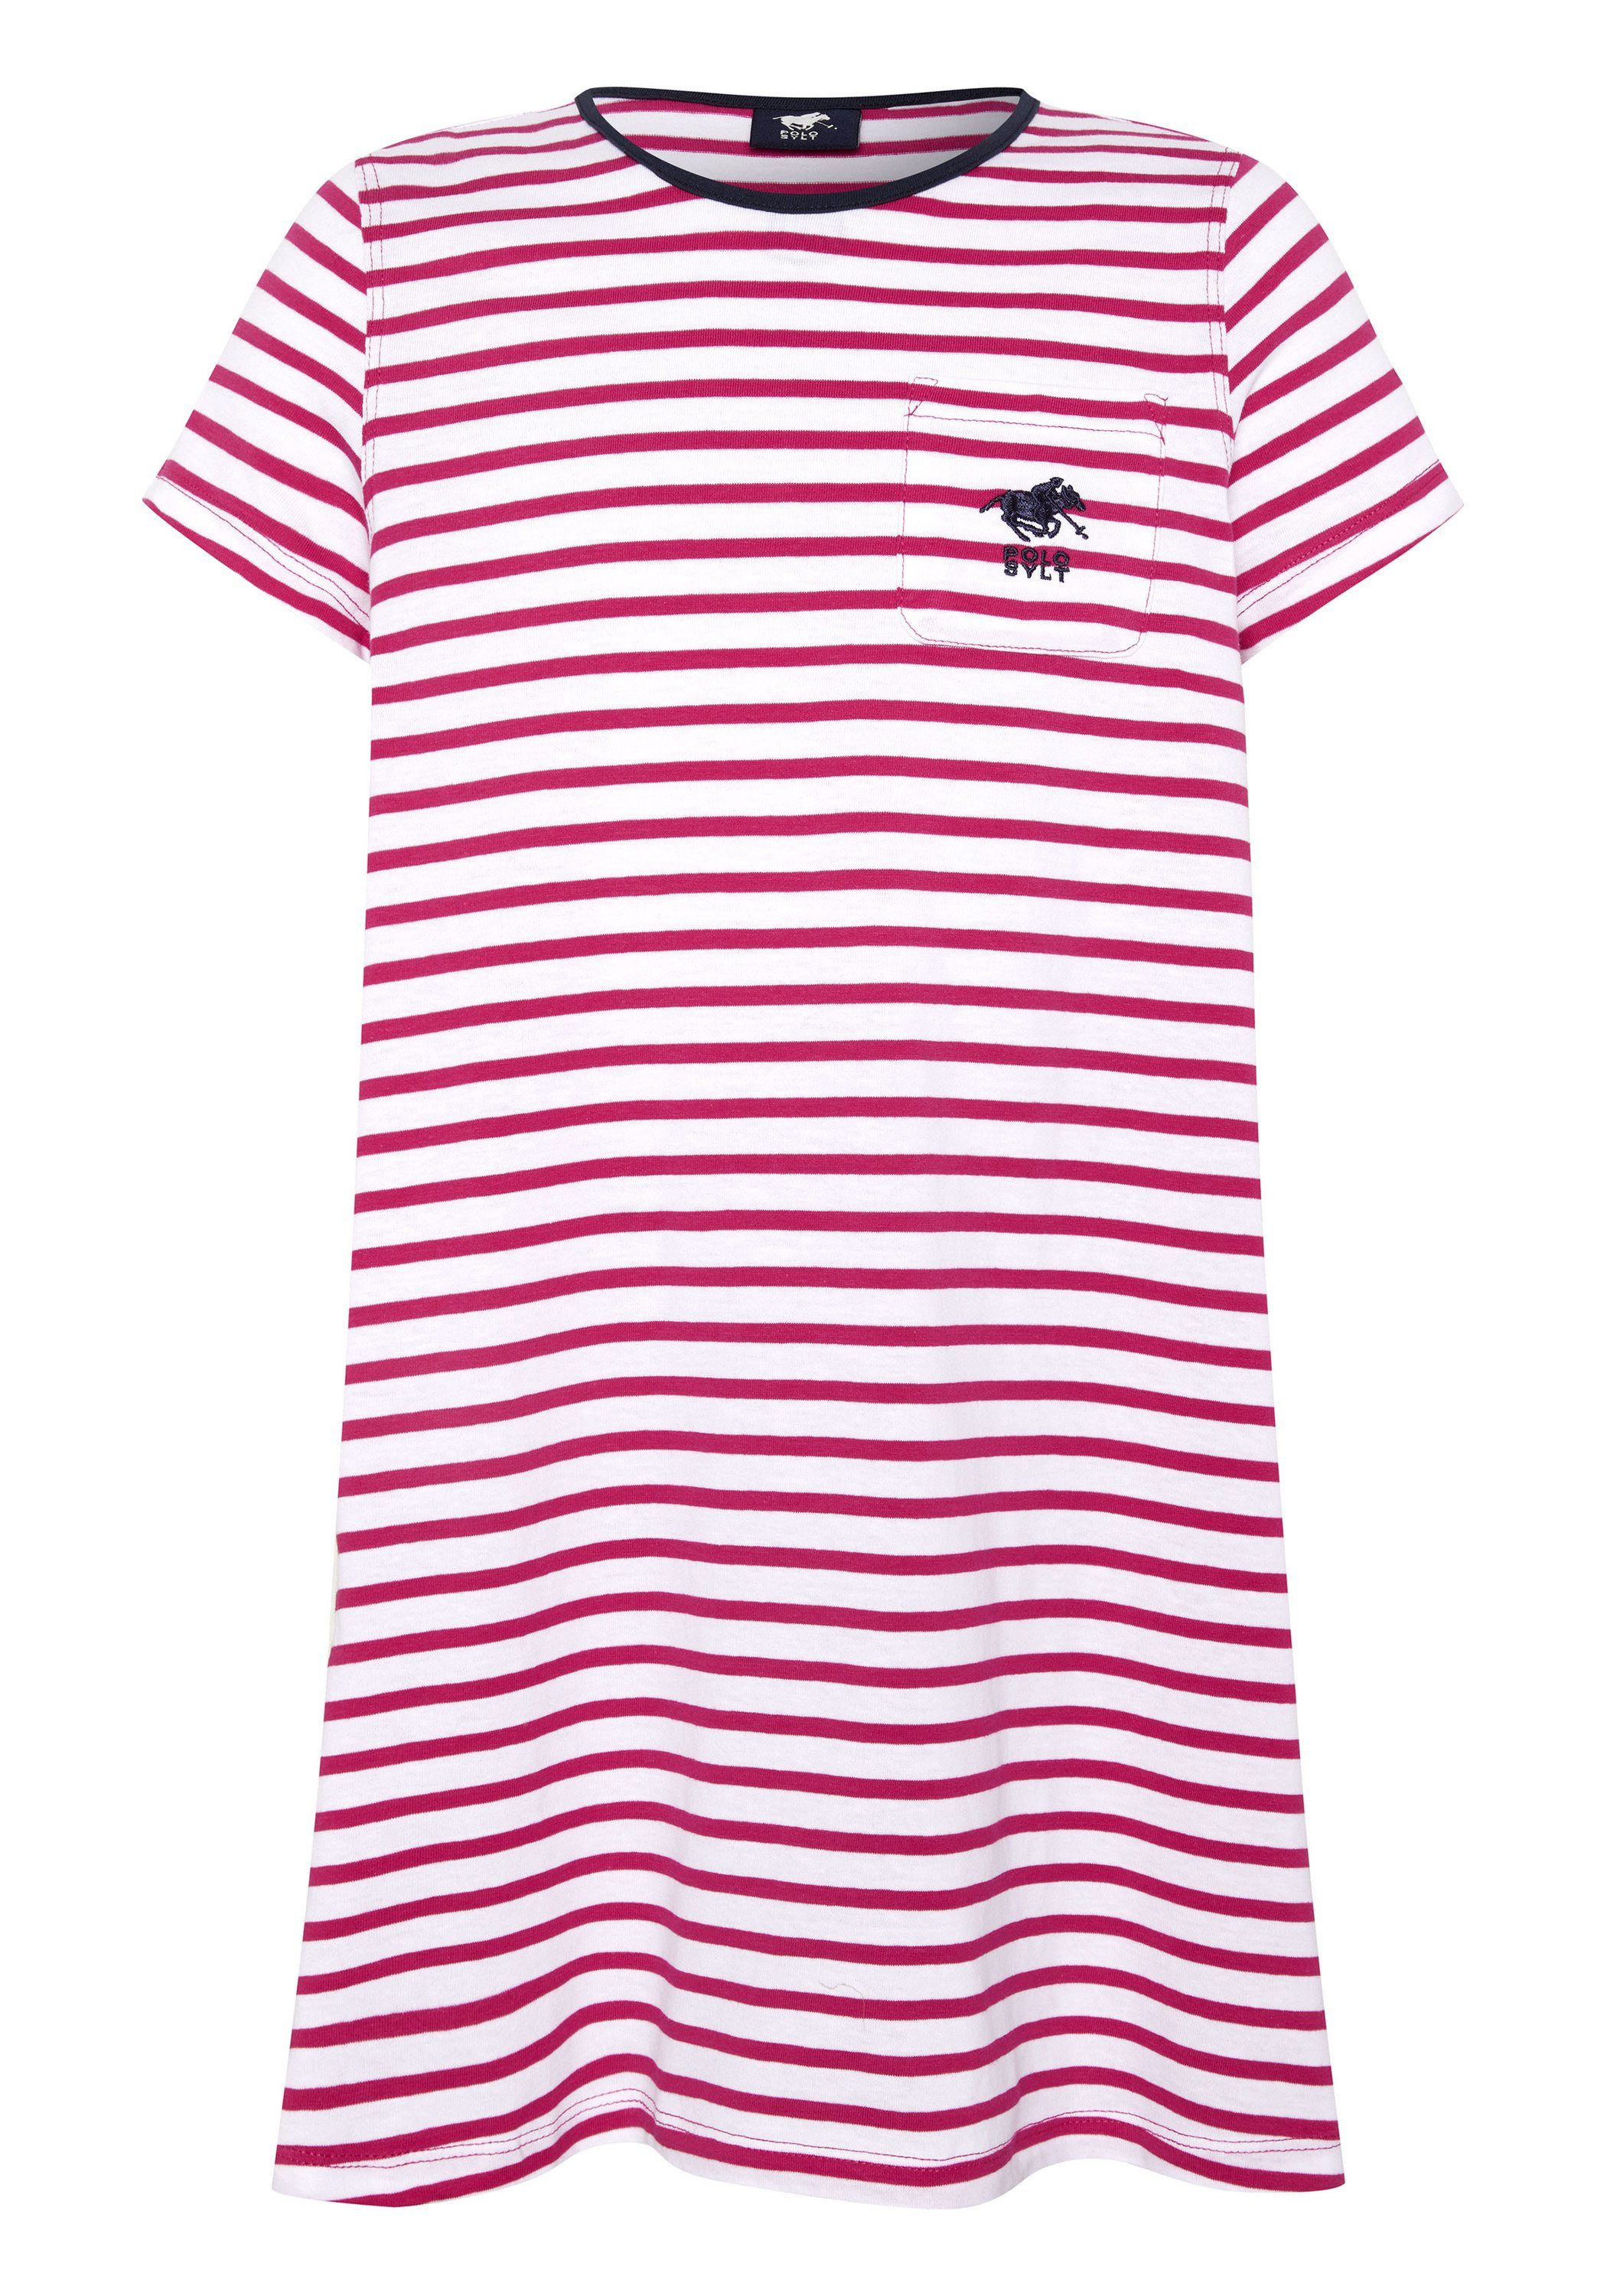 Polo Sylt Design Streifen Jerseykleid im 2910 Pink/White